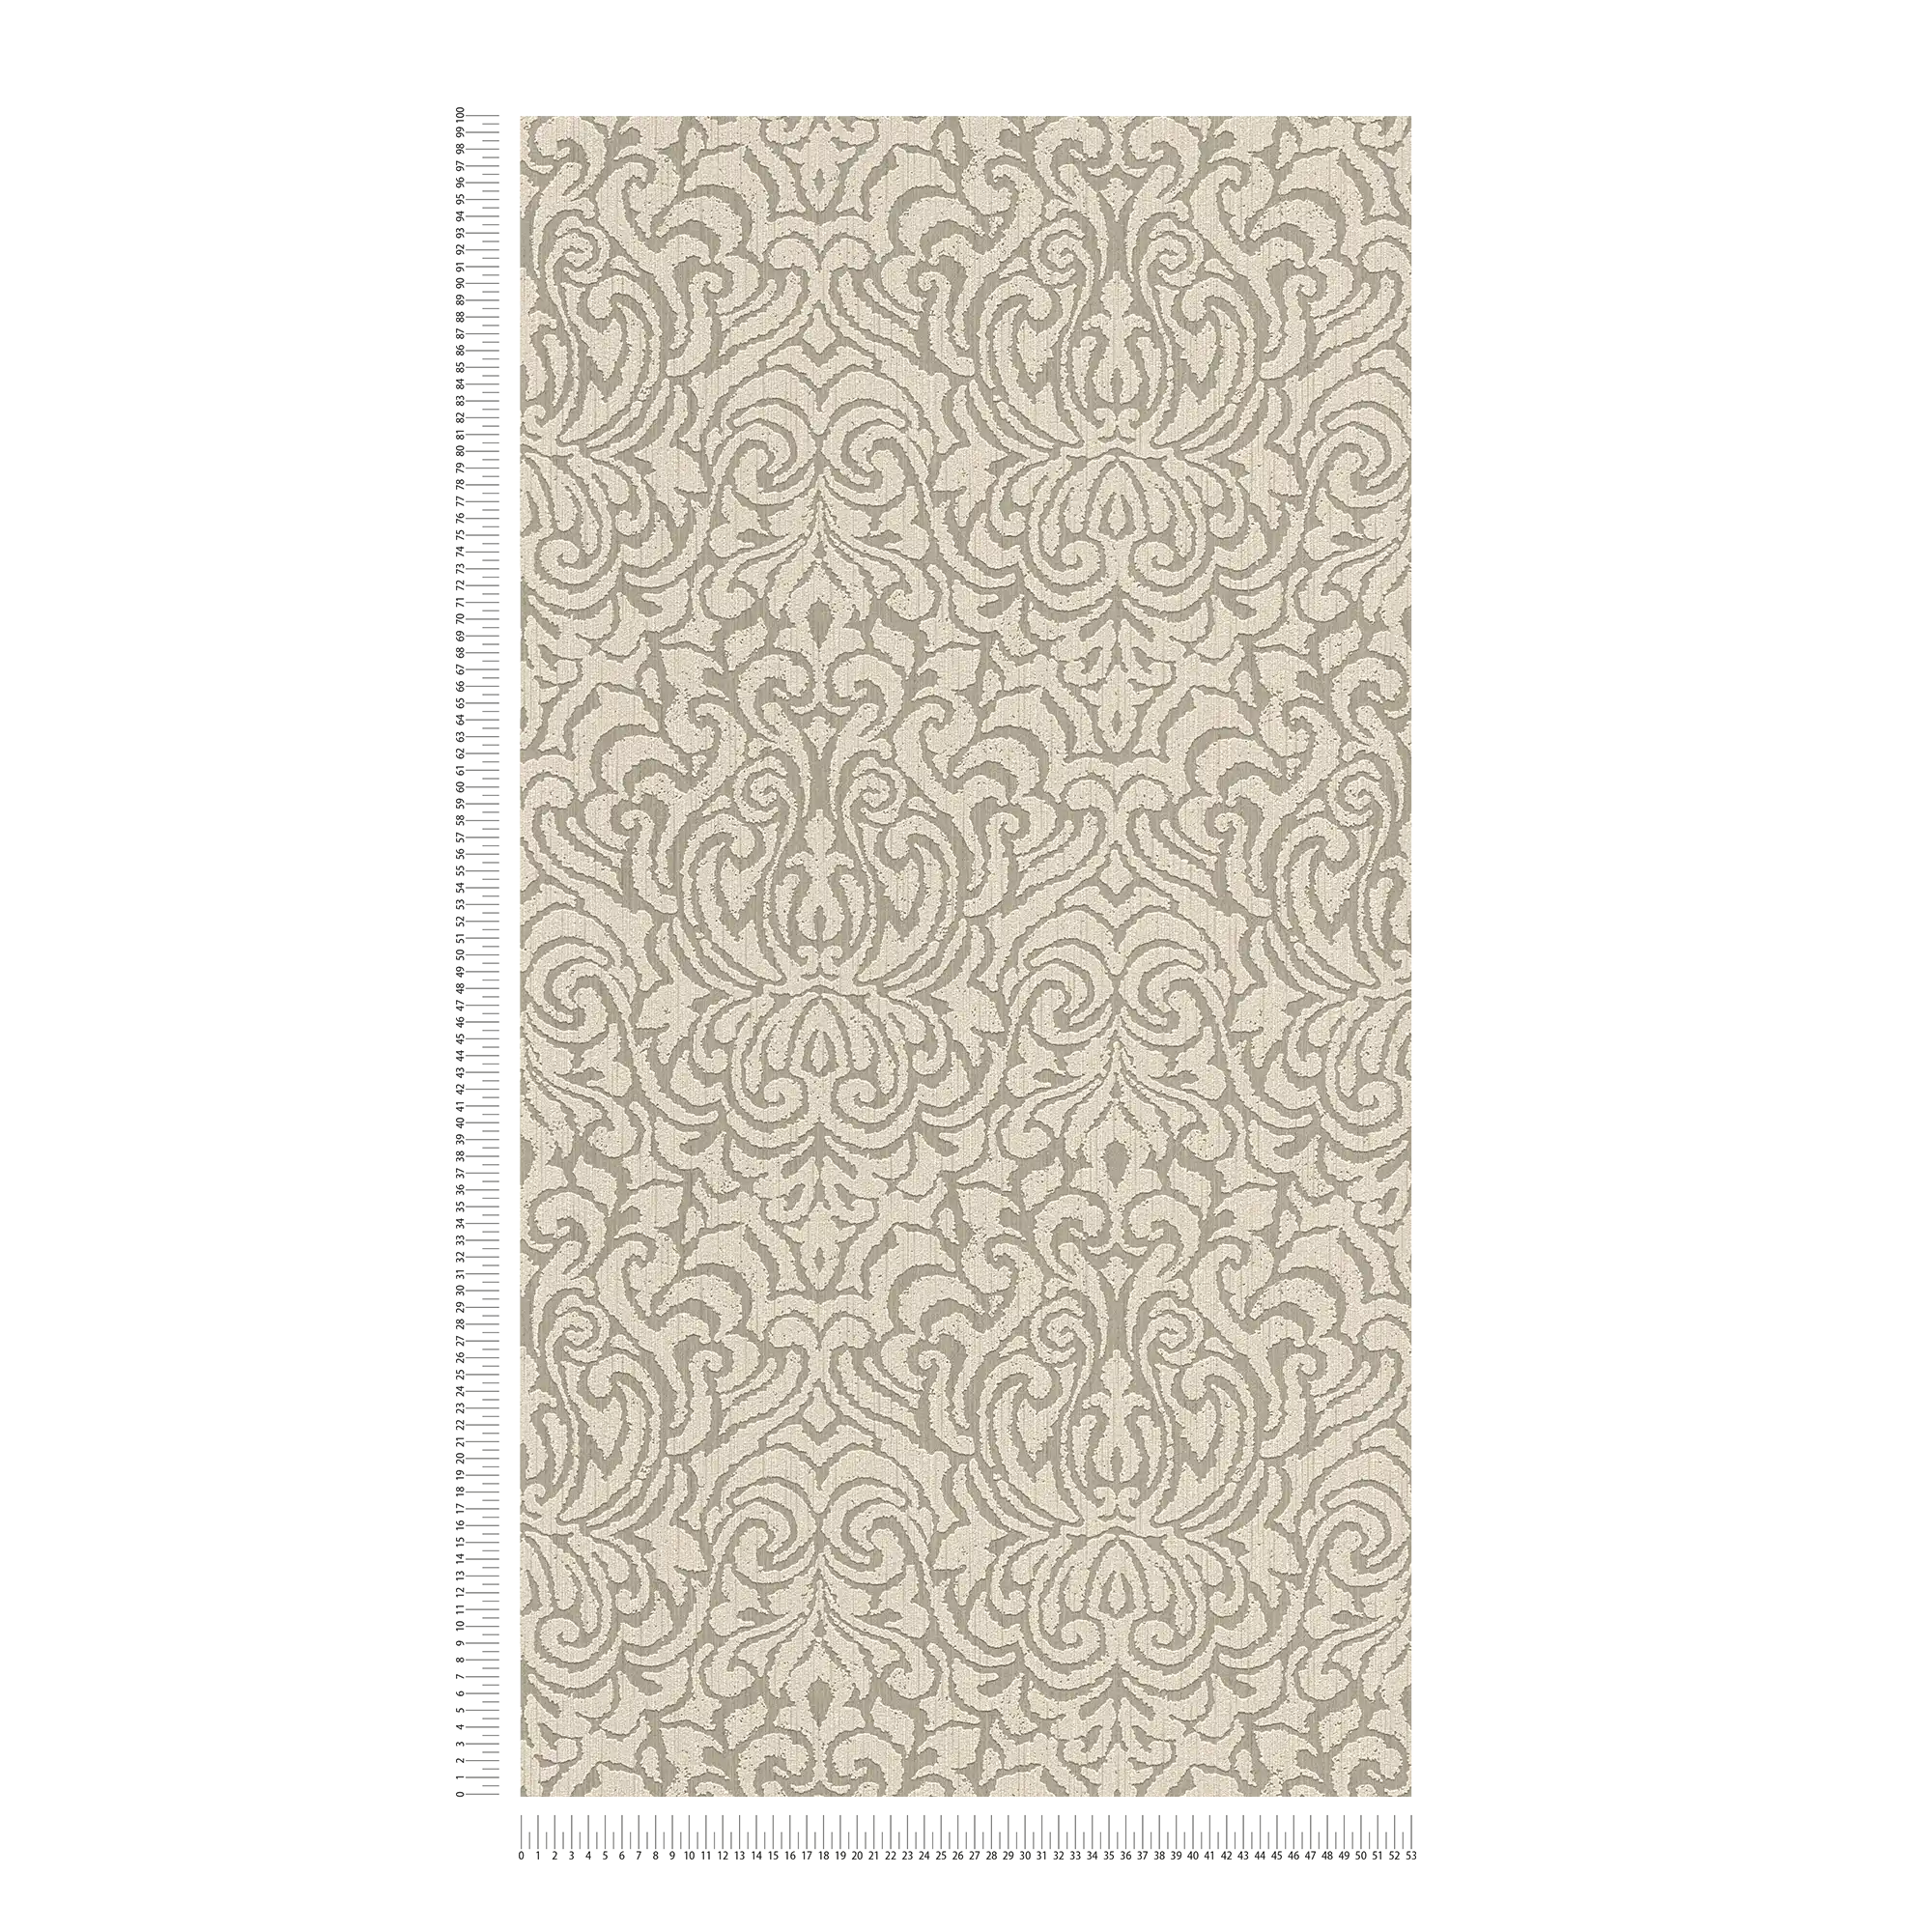             behangornamenten in used look met textuureffect - beige, bruin
        